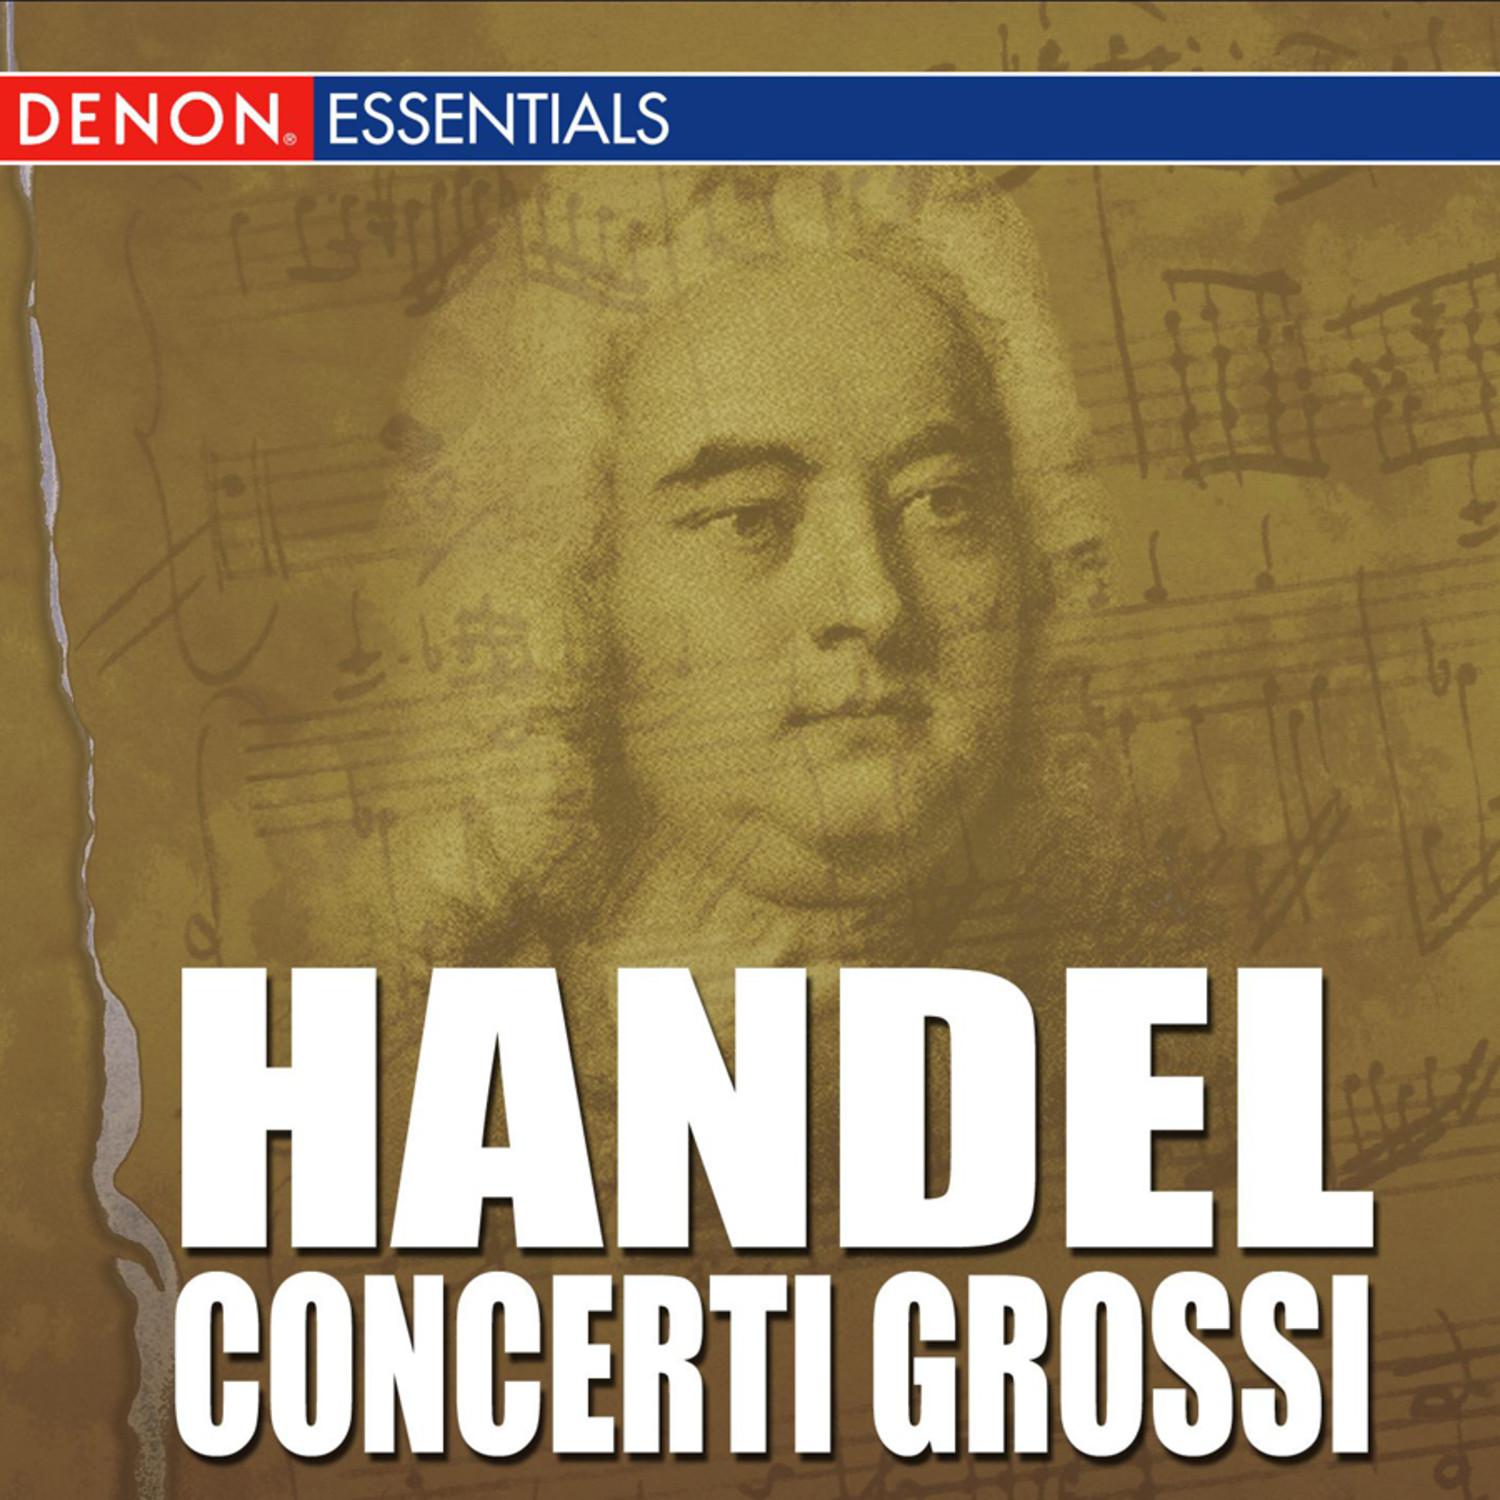 Concerto Grosso, Op. 6: No. 5 in D Major, HWV 323: II. Allegro